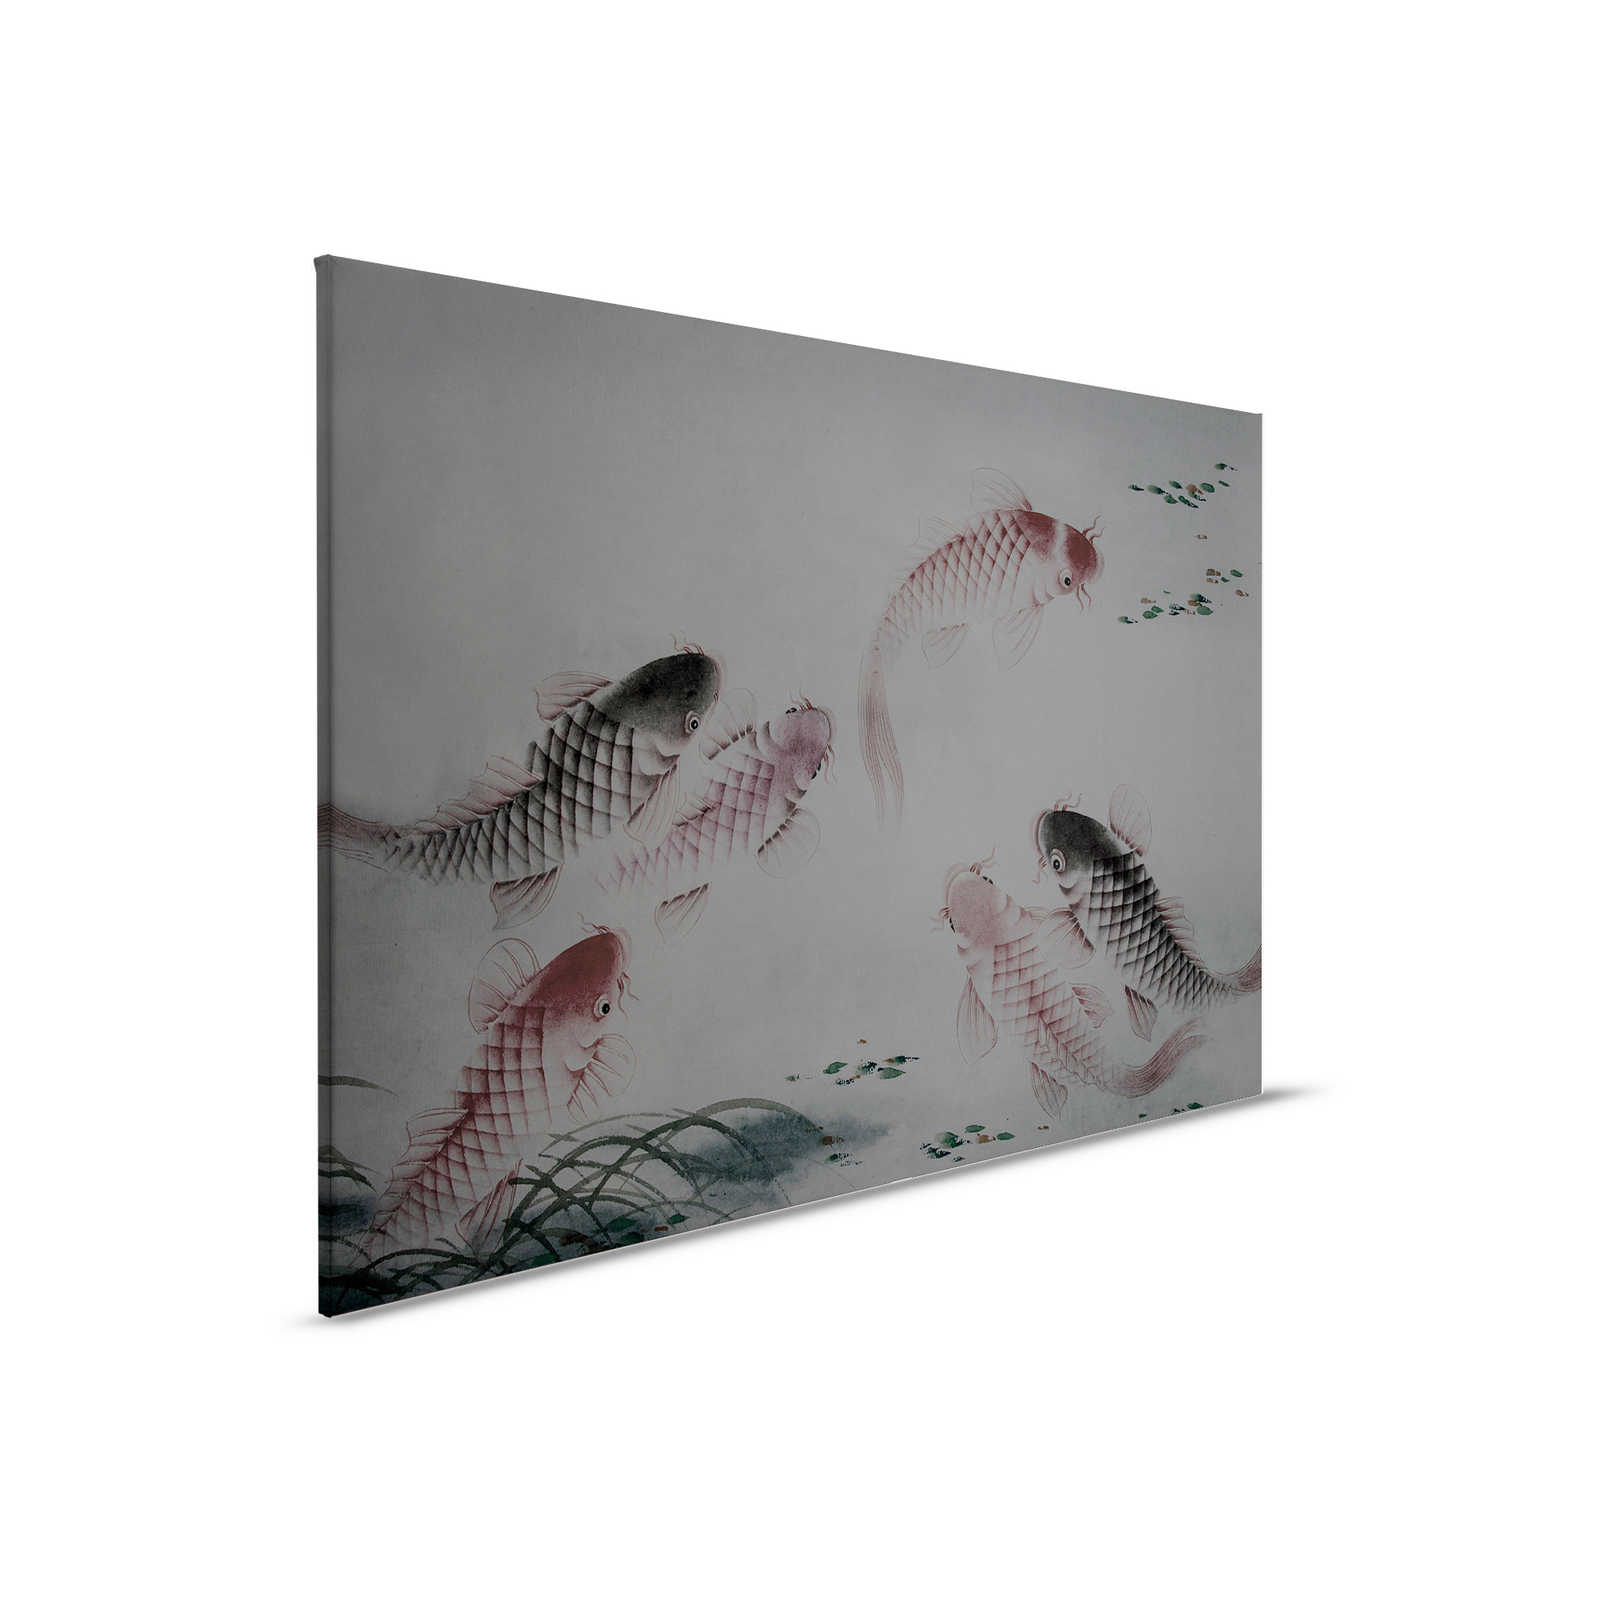         Leinwandbild Asia Style mit Koi-Teich | grau – 0,90 m x 0,60 m
    